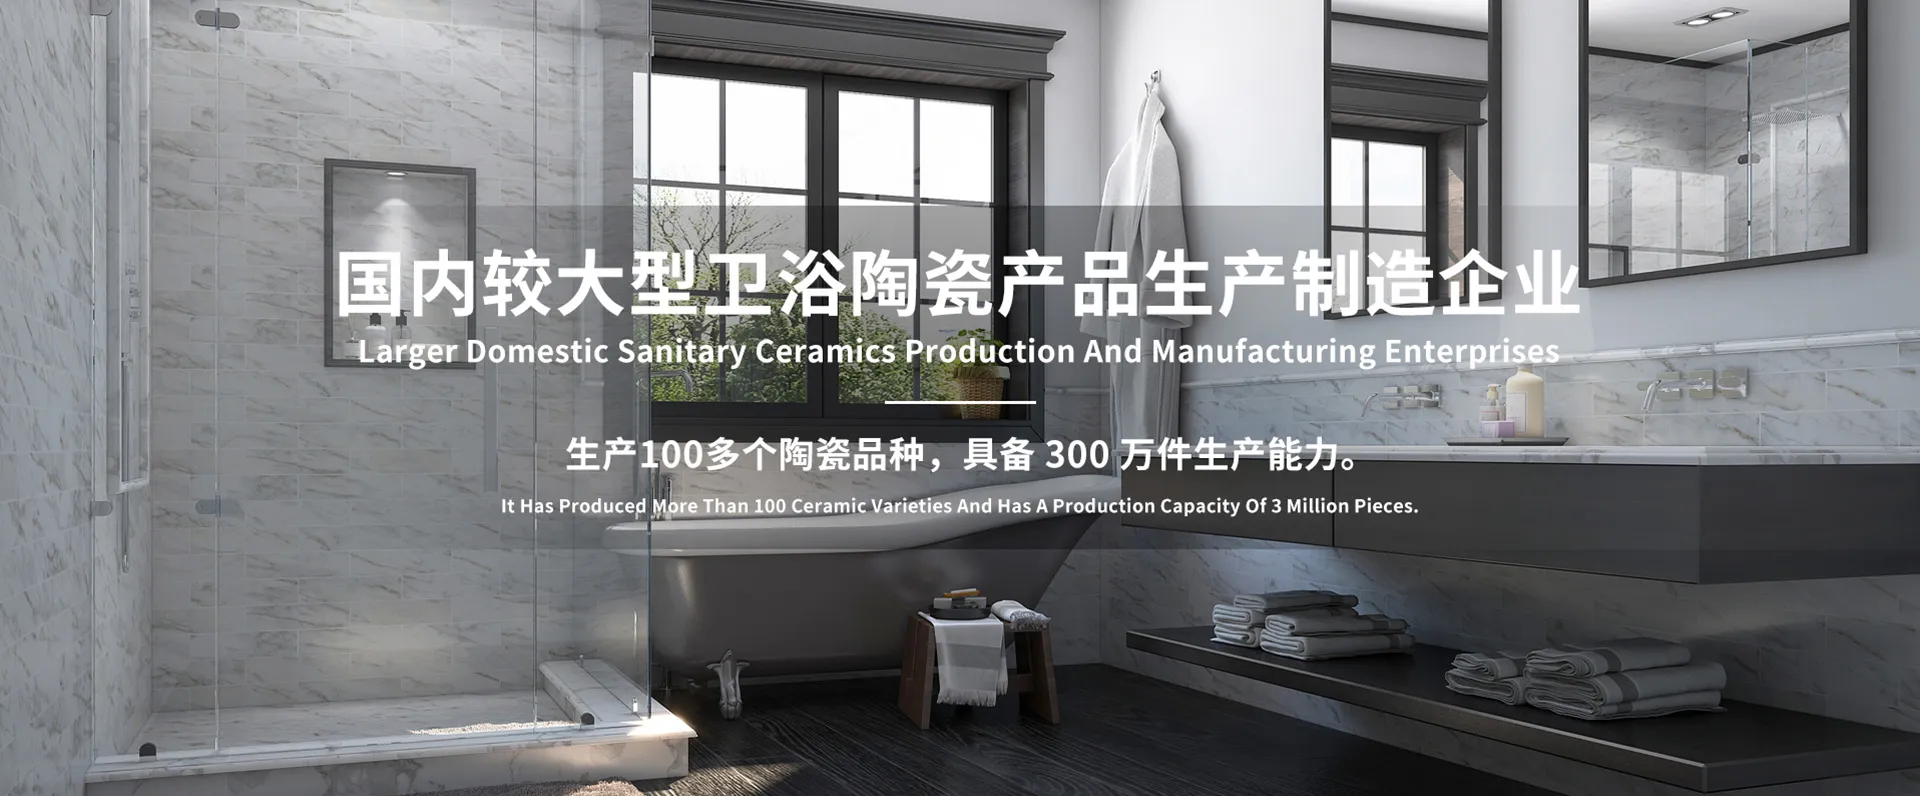 Tangshan Fenghua Ceramics Co., Ltd